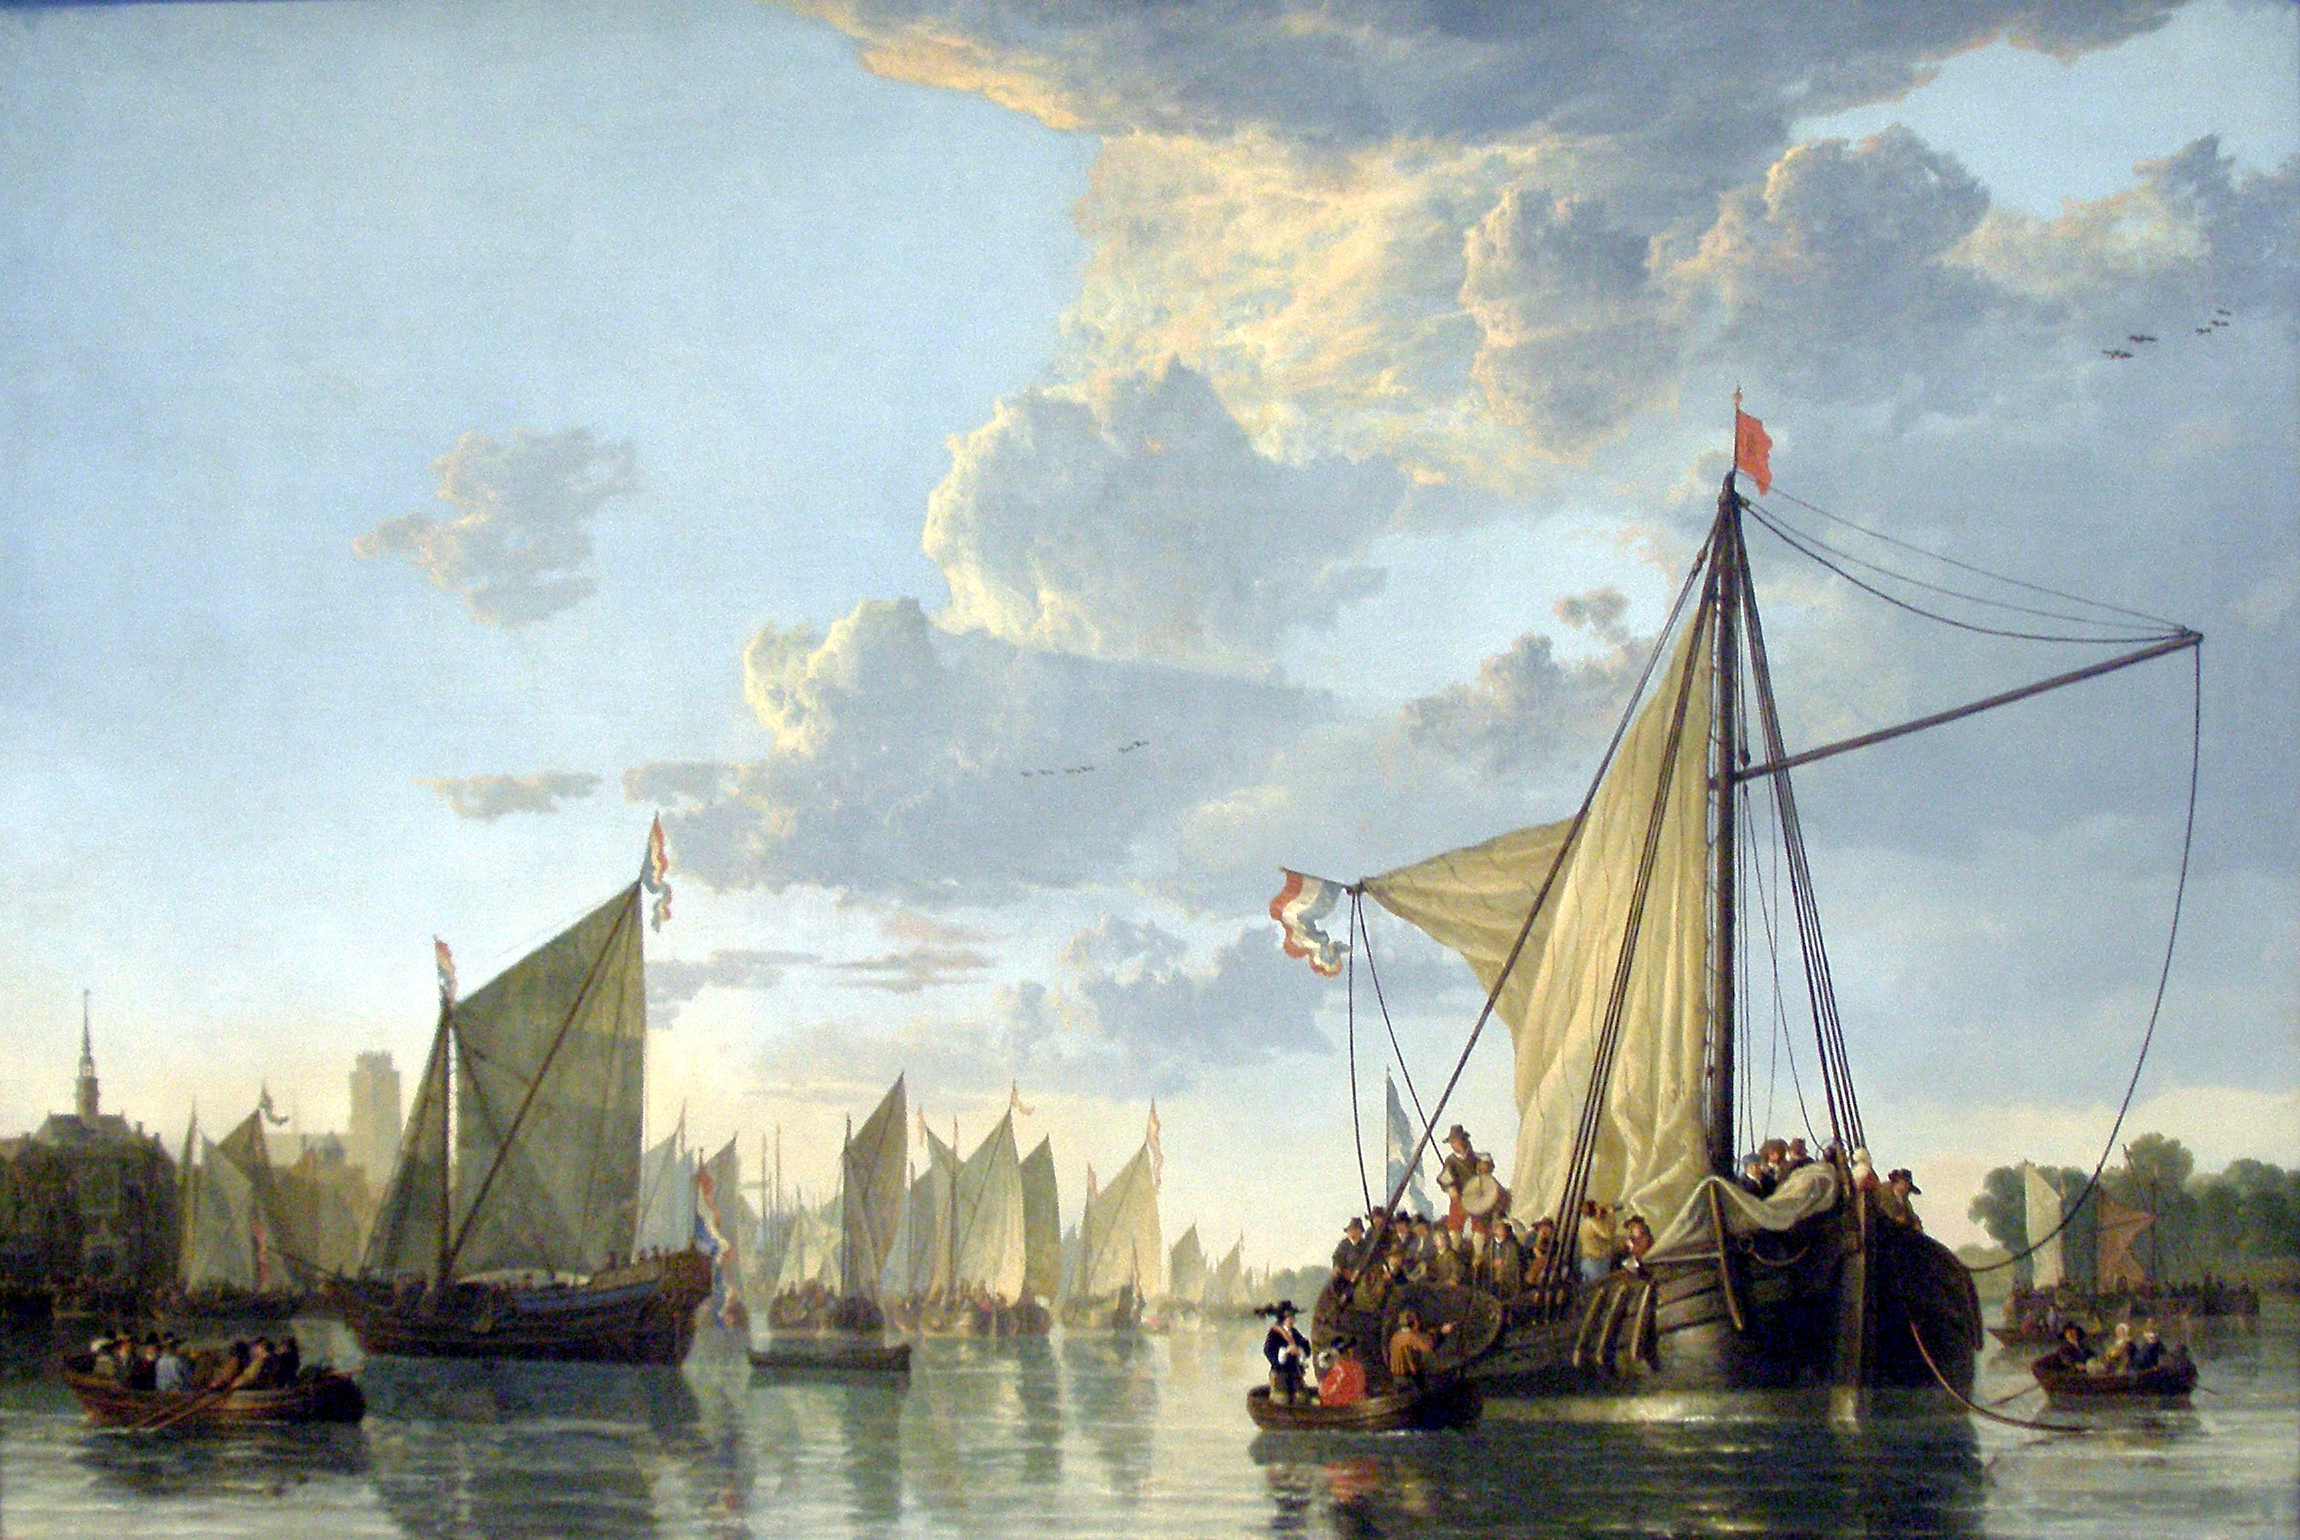 Le port de Dordrecht by Albert Cuyp - c.1650 -  114.9 x 170.2 cm 